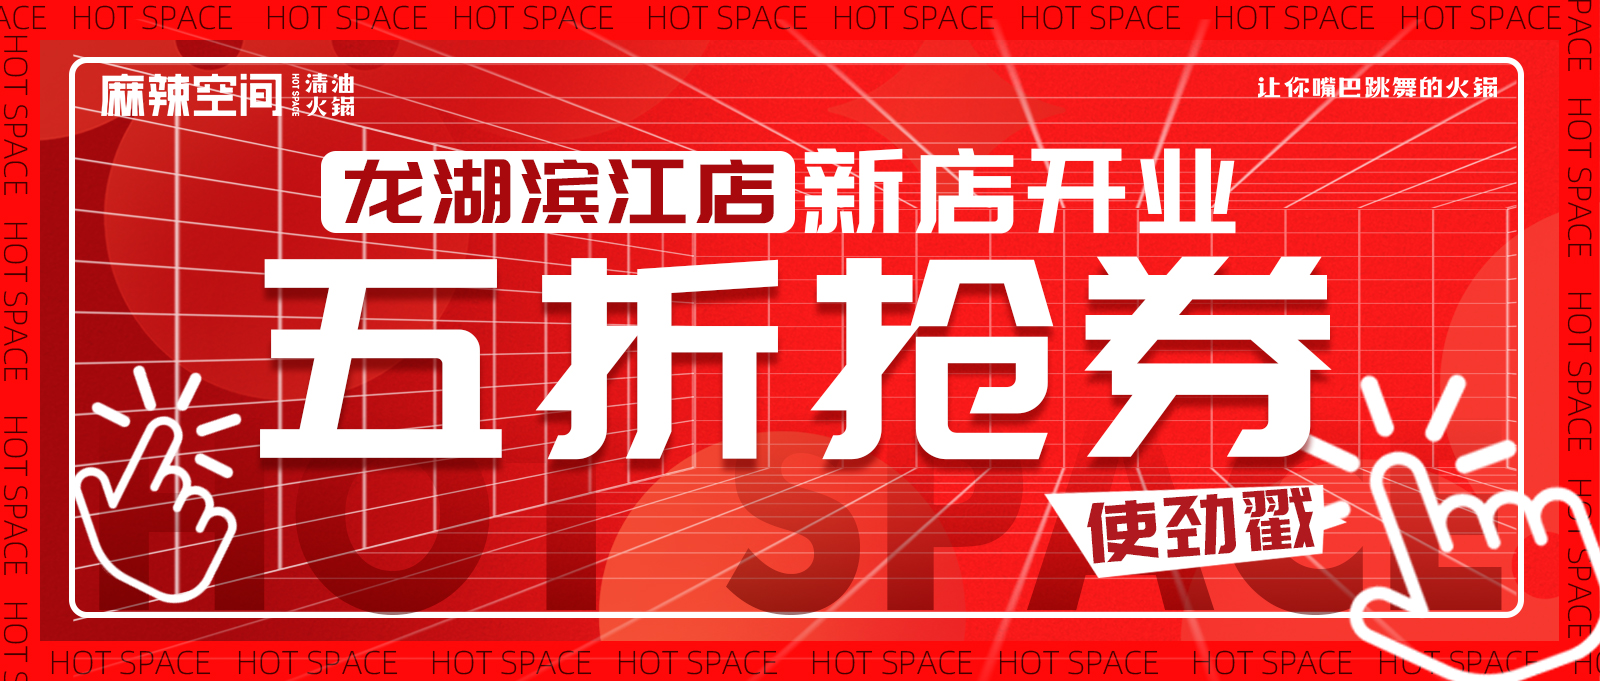 FB体育官方网站(中国)有限公司龙湖滨江店|成都东门上的朋友们快点来！